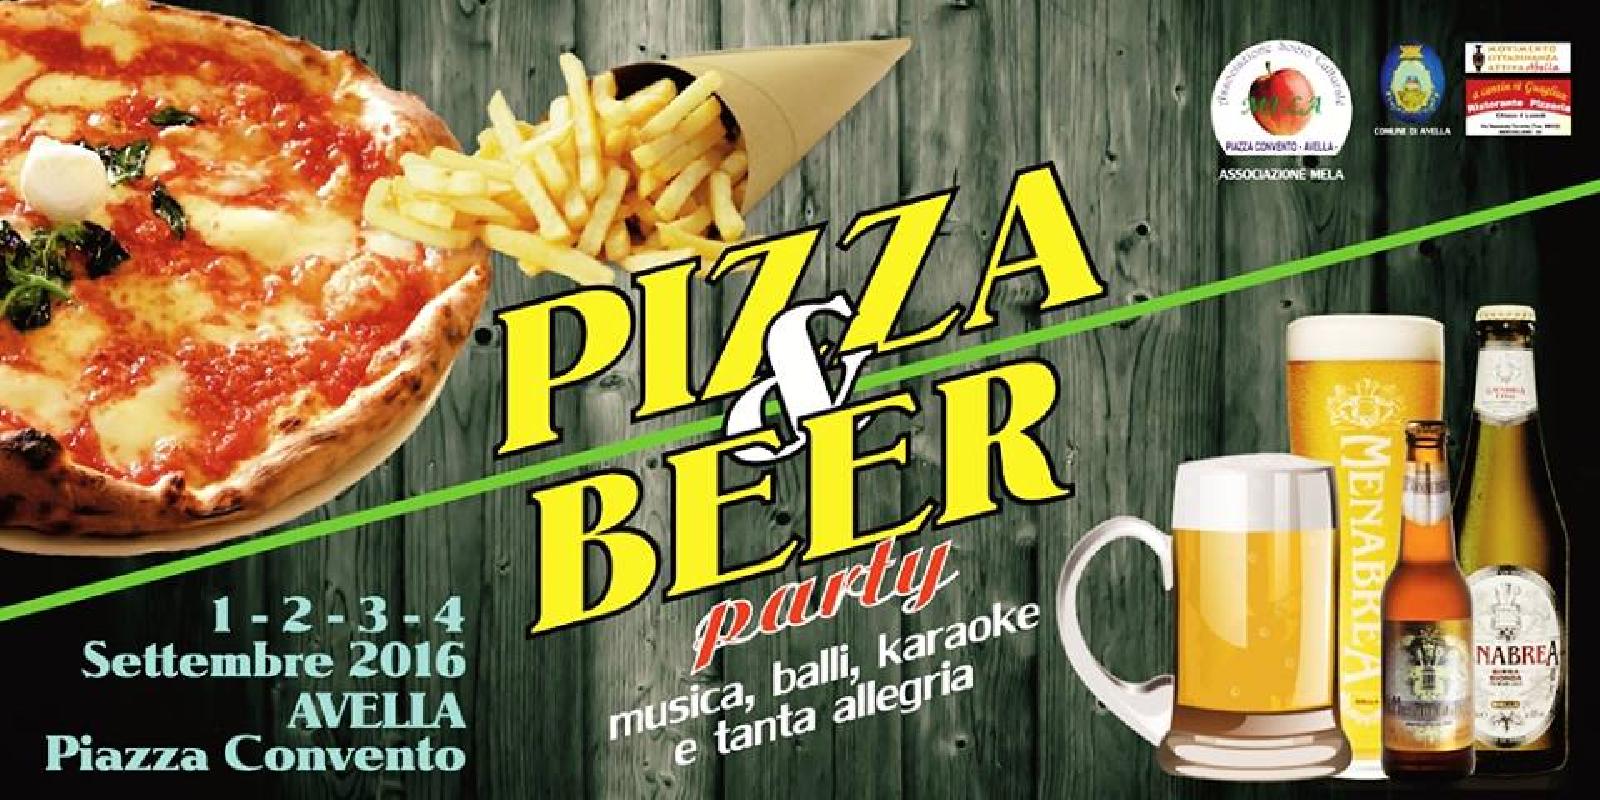 Dal 1 al 4 settembre "Pizza & Beer" ad Avella